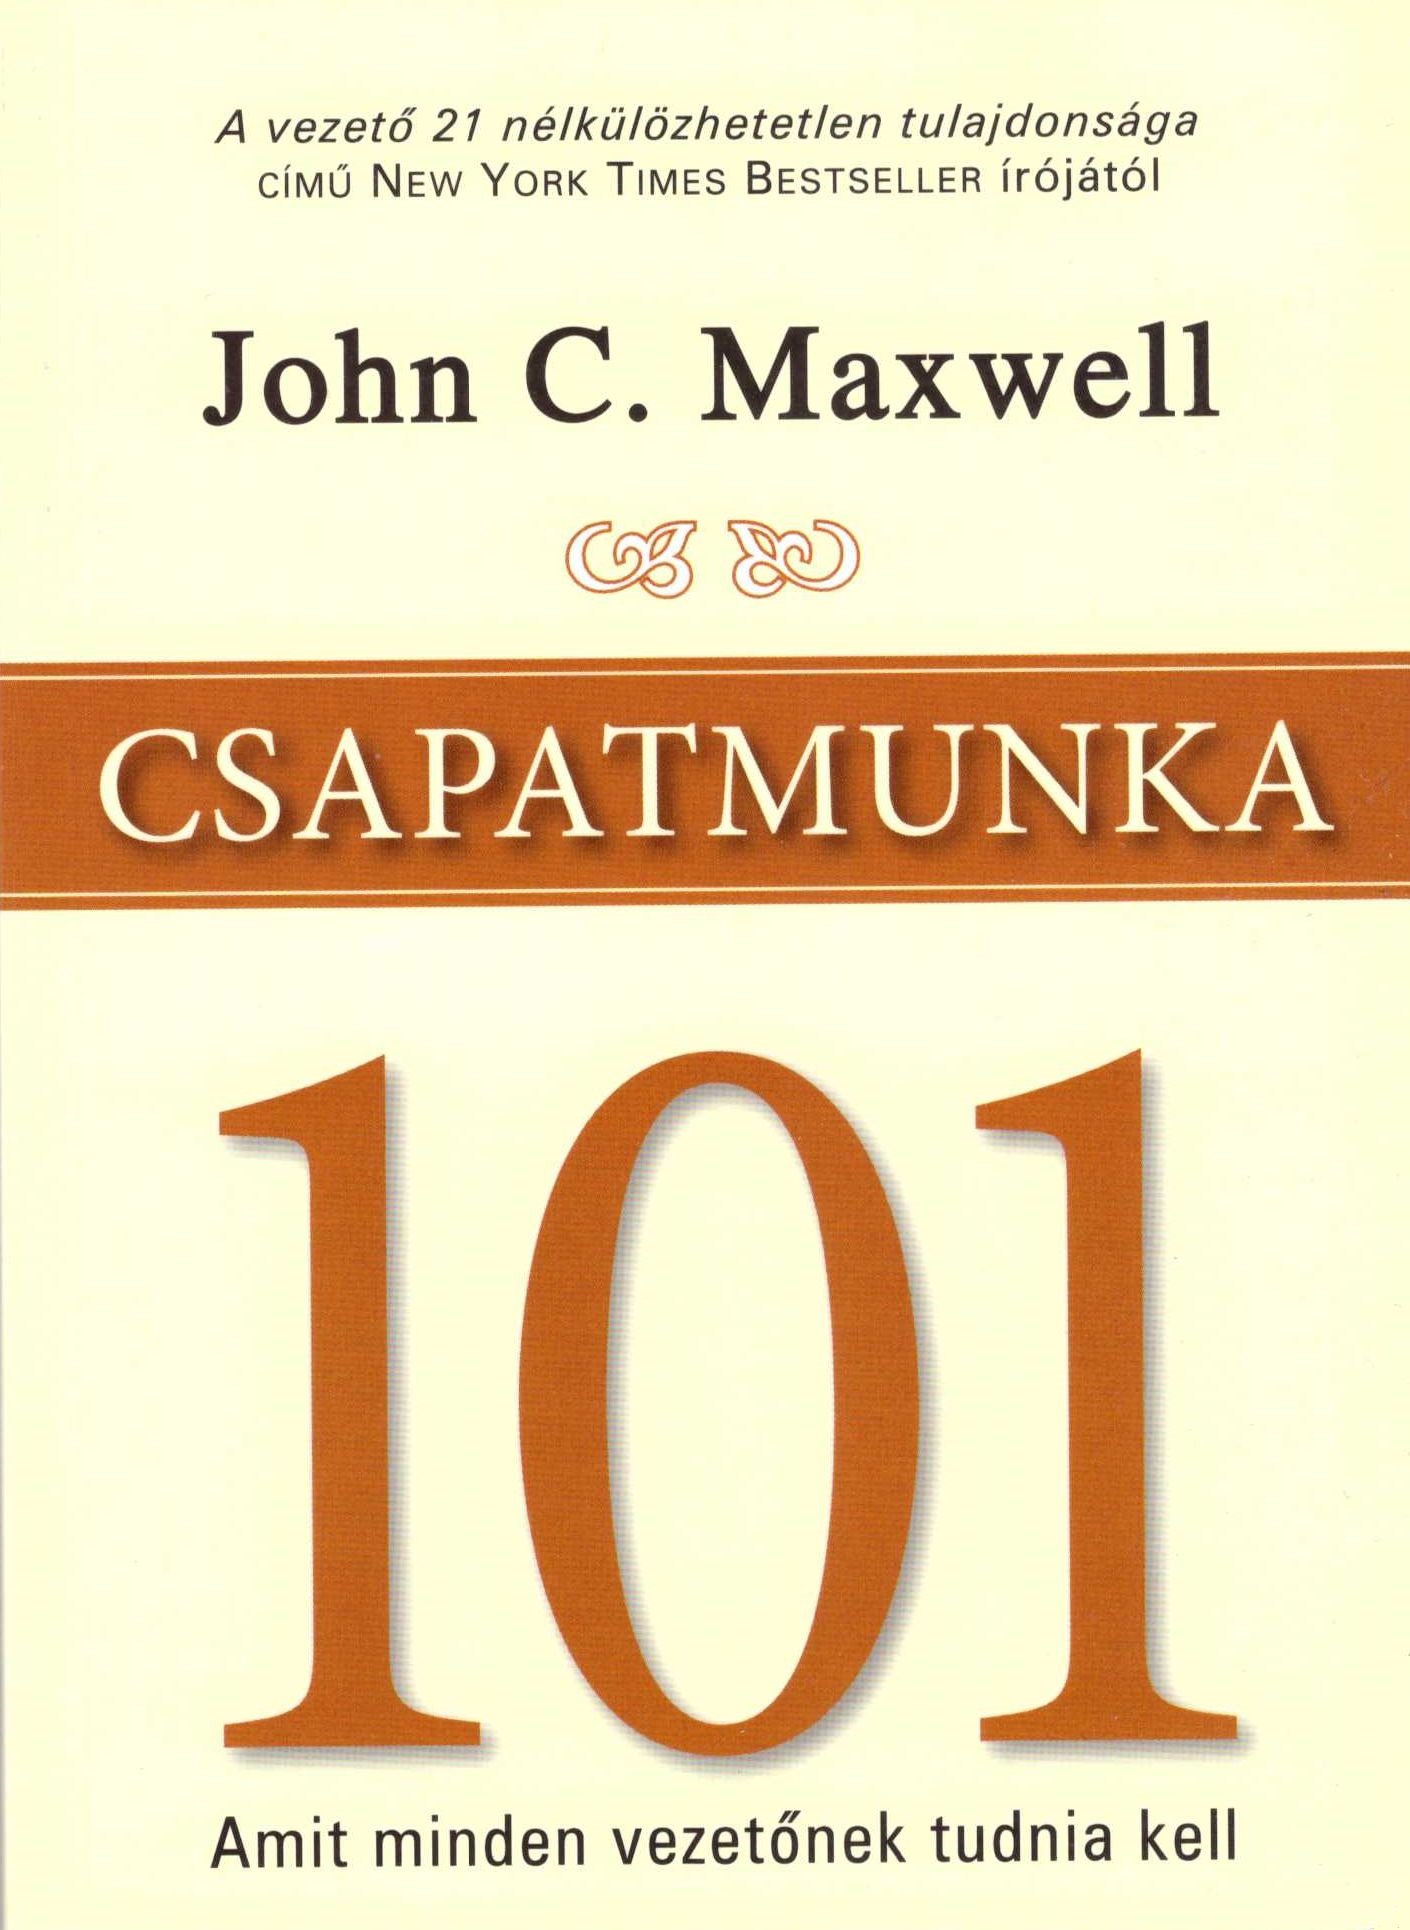 John C. Maxwell: Csapatmunka 101 - Amit minden vezetőnek tudnia kell